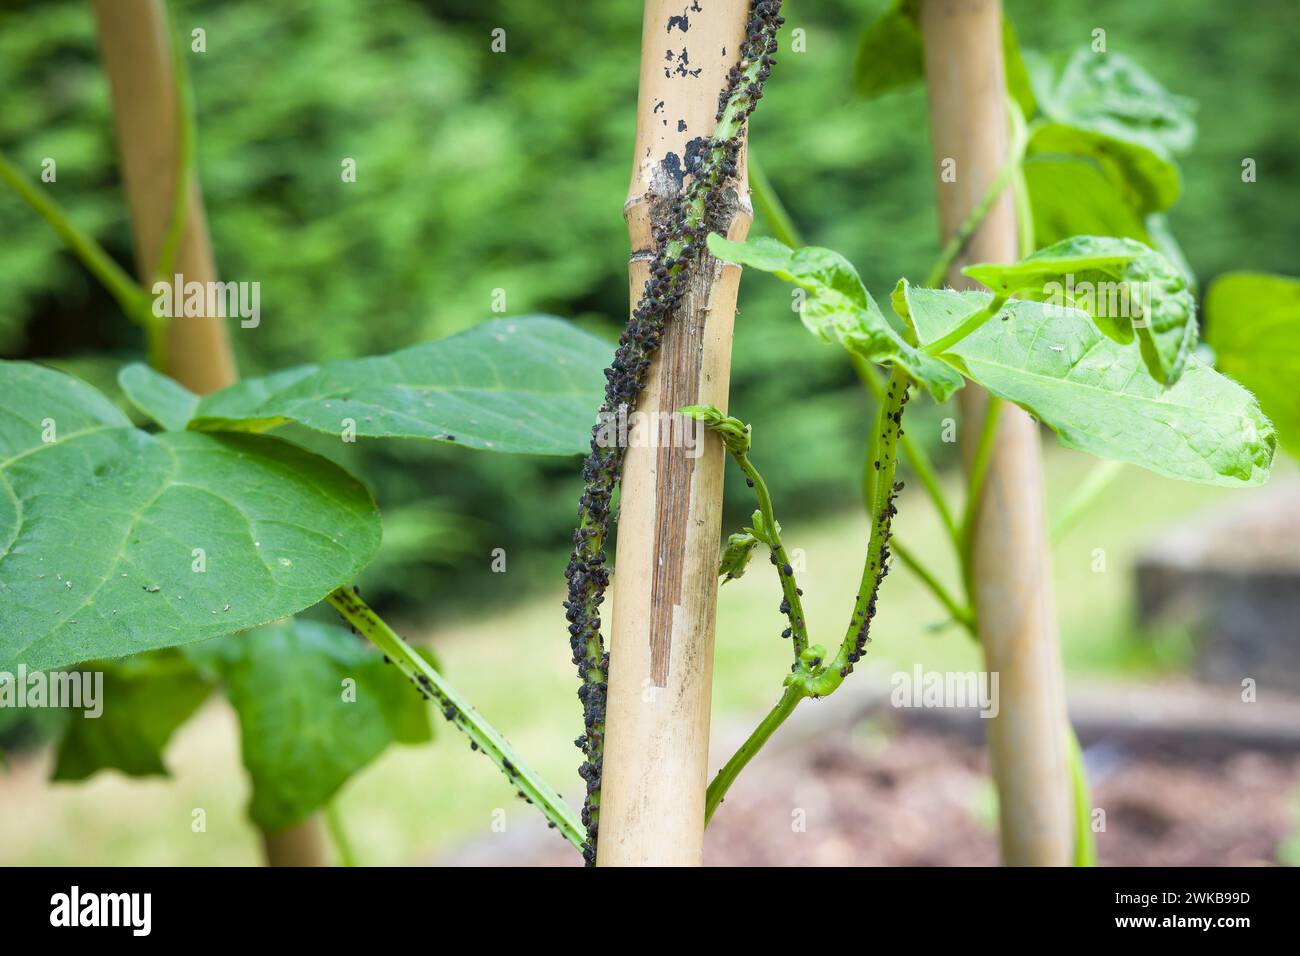 Pucerons, mouche noire (pucerons de haricots noirs, mouches noires) sur la tige d'une plante de haricot coureur (haricot chasseur, Phaseolus vulgaris). Jardin britannique Banque D'Images